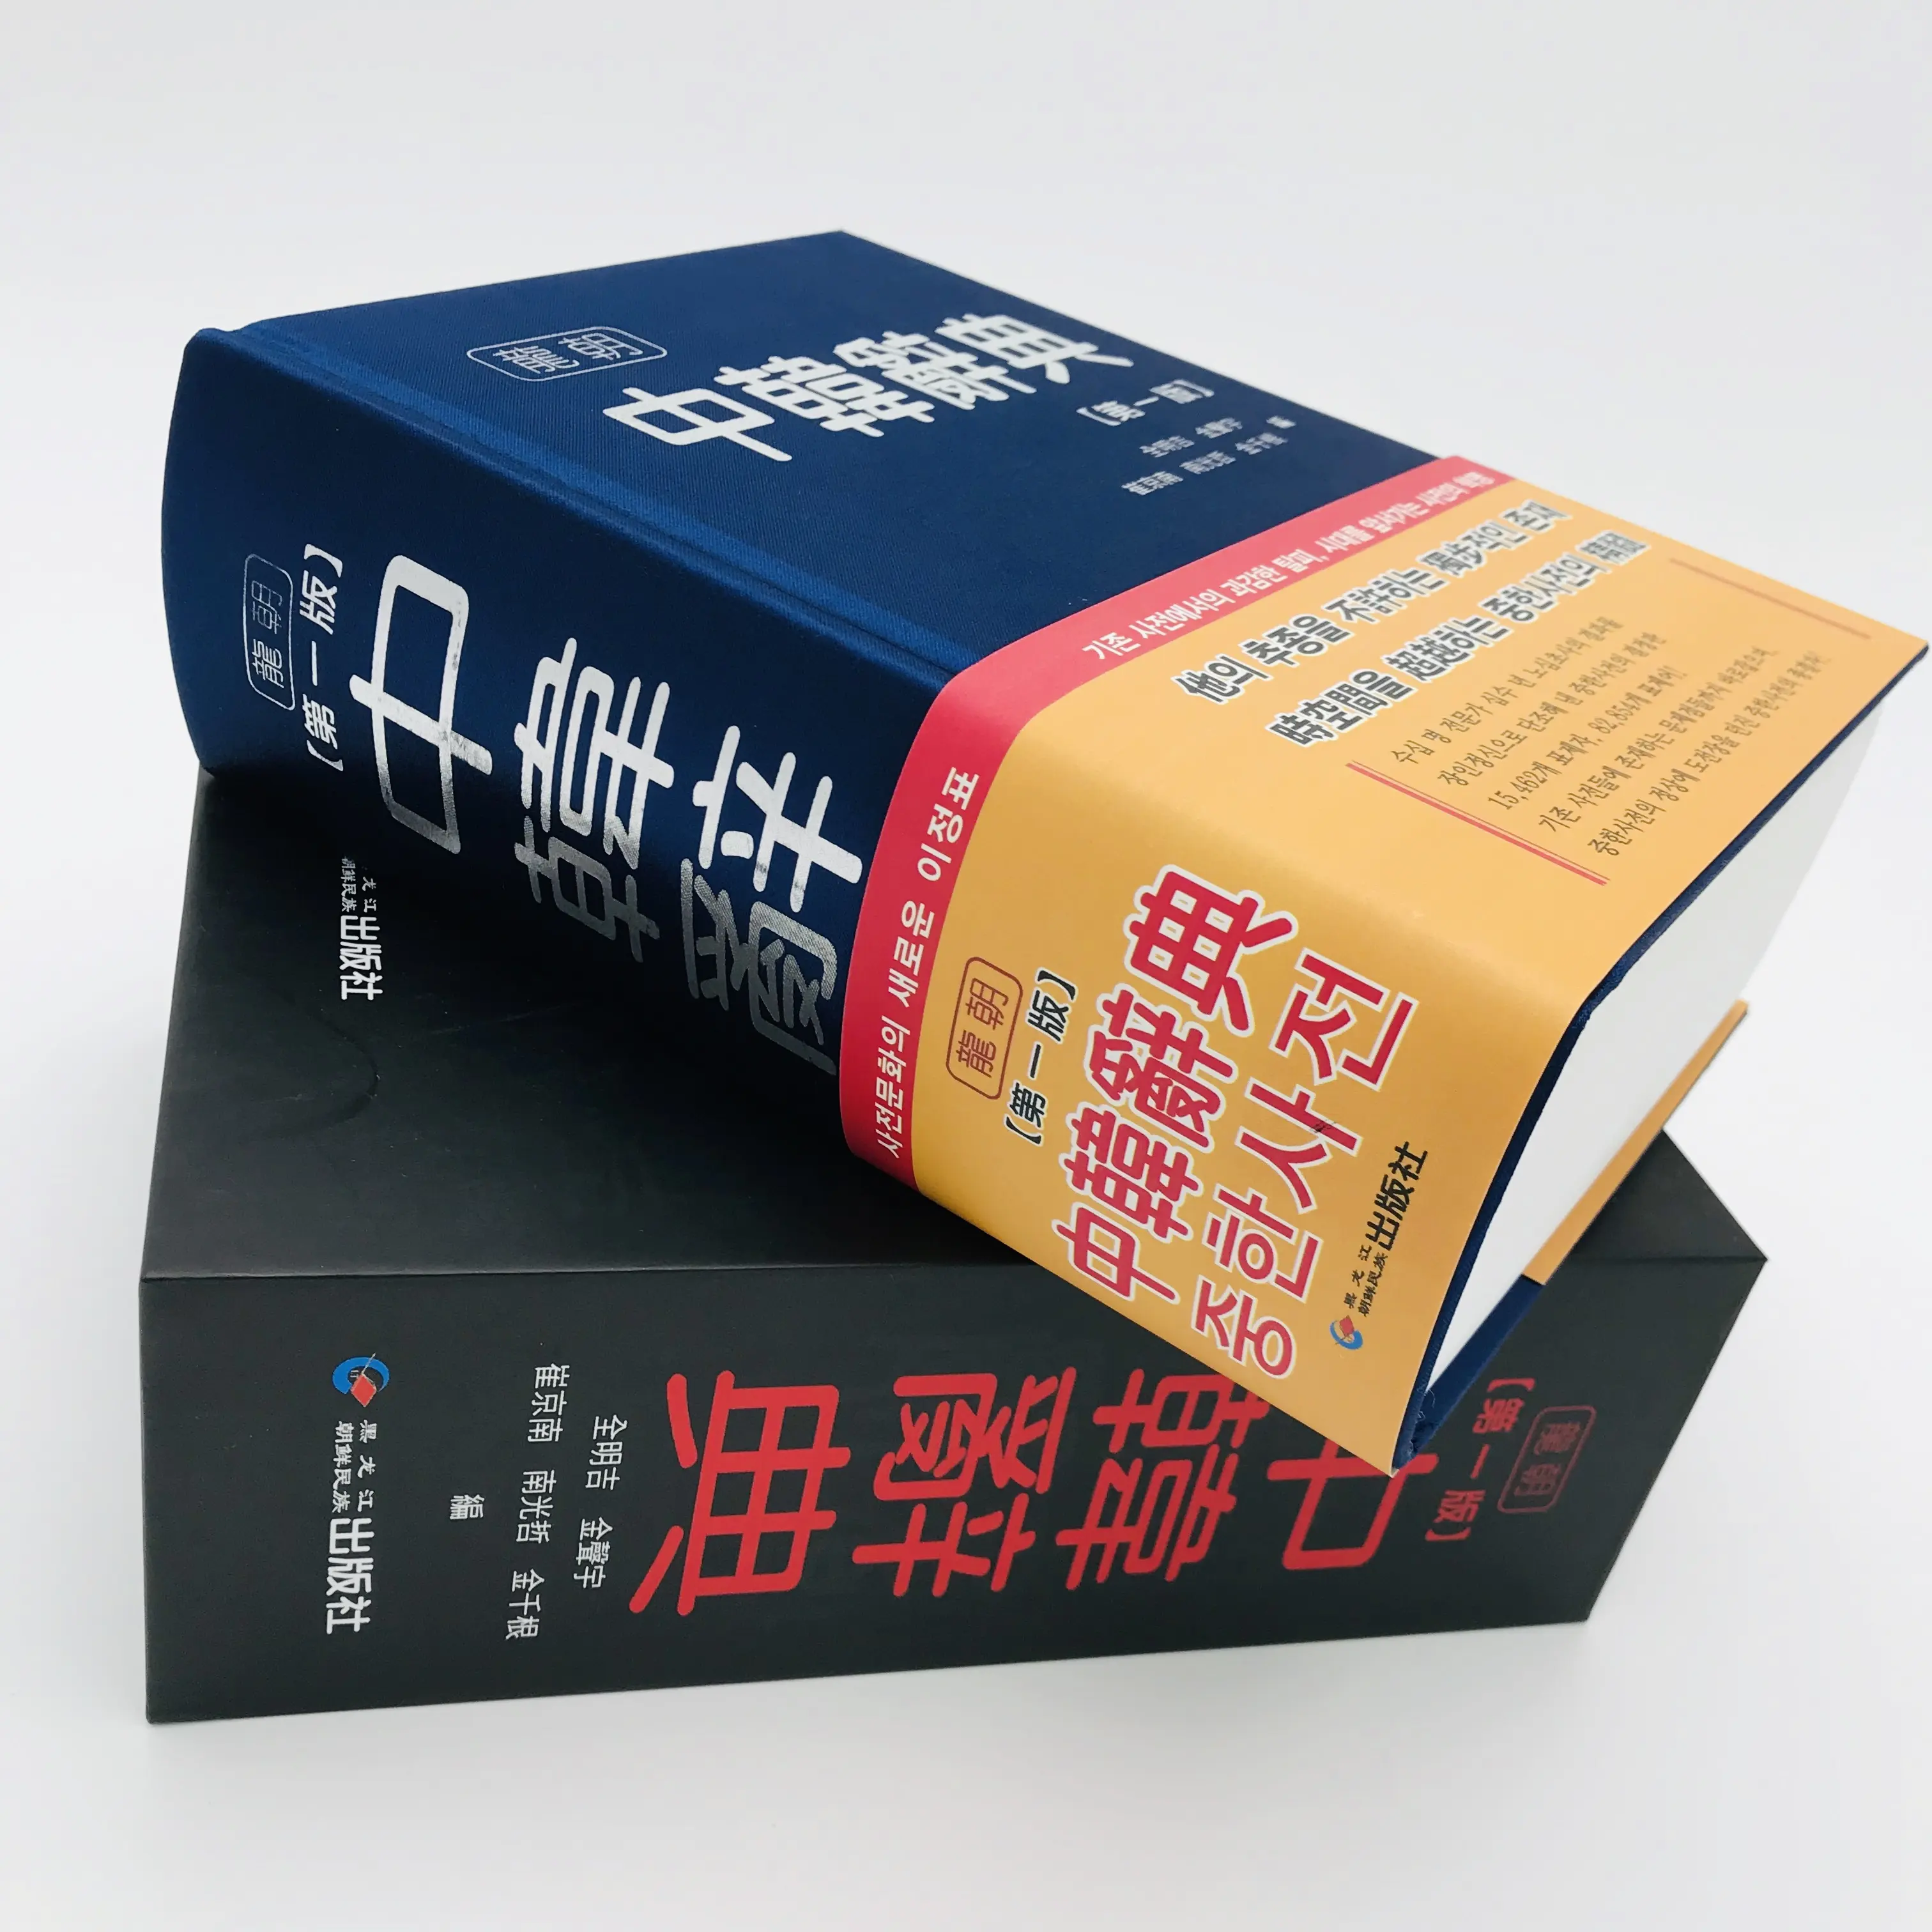 Servicio de impresión de libros de diccionario en inglés de tapa dura